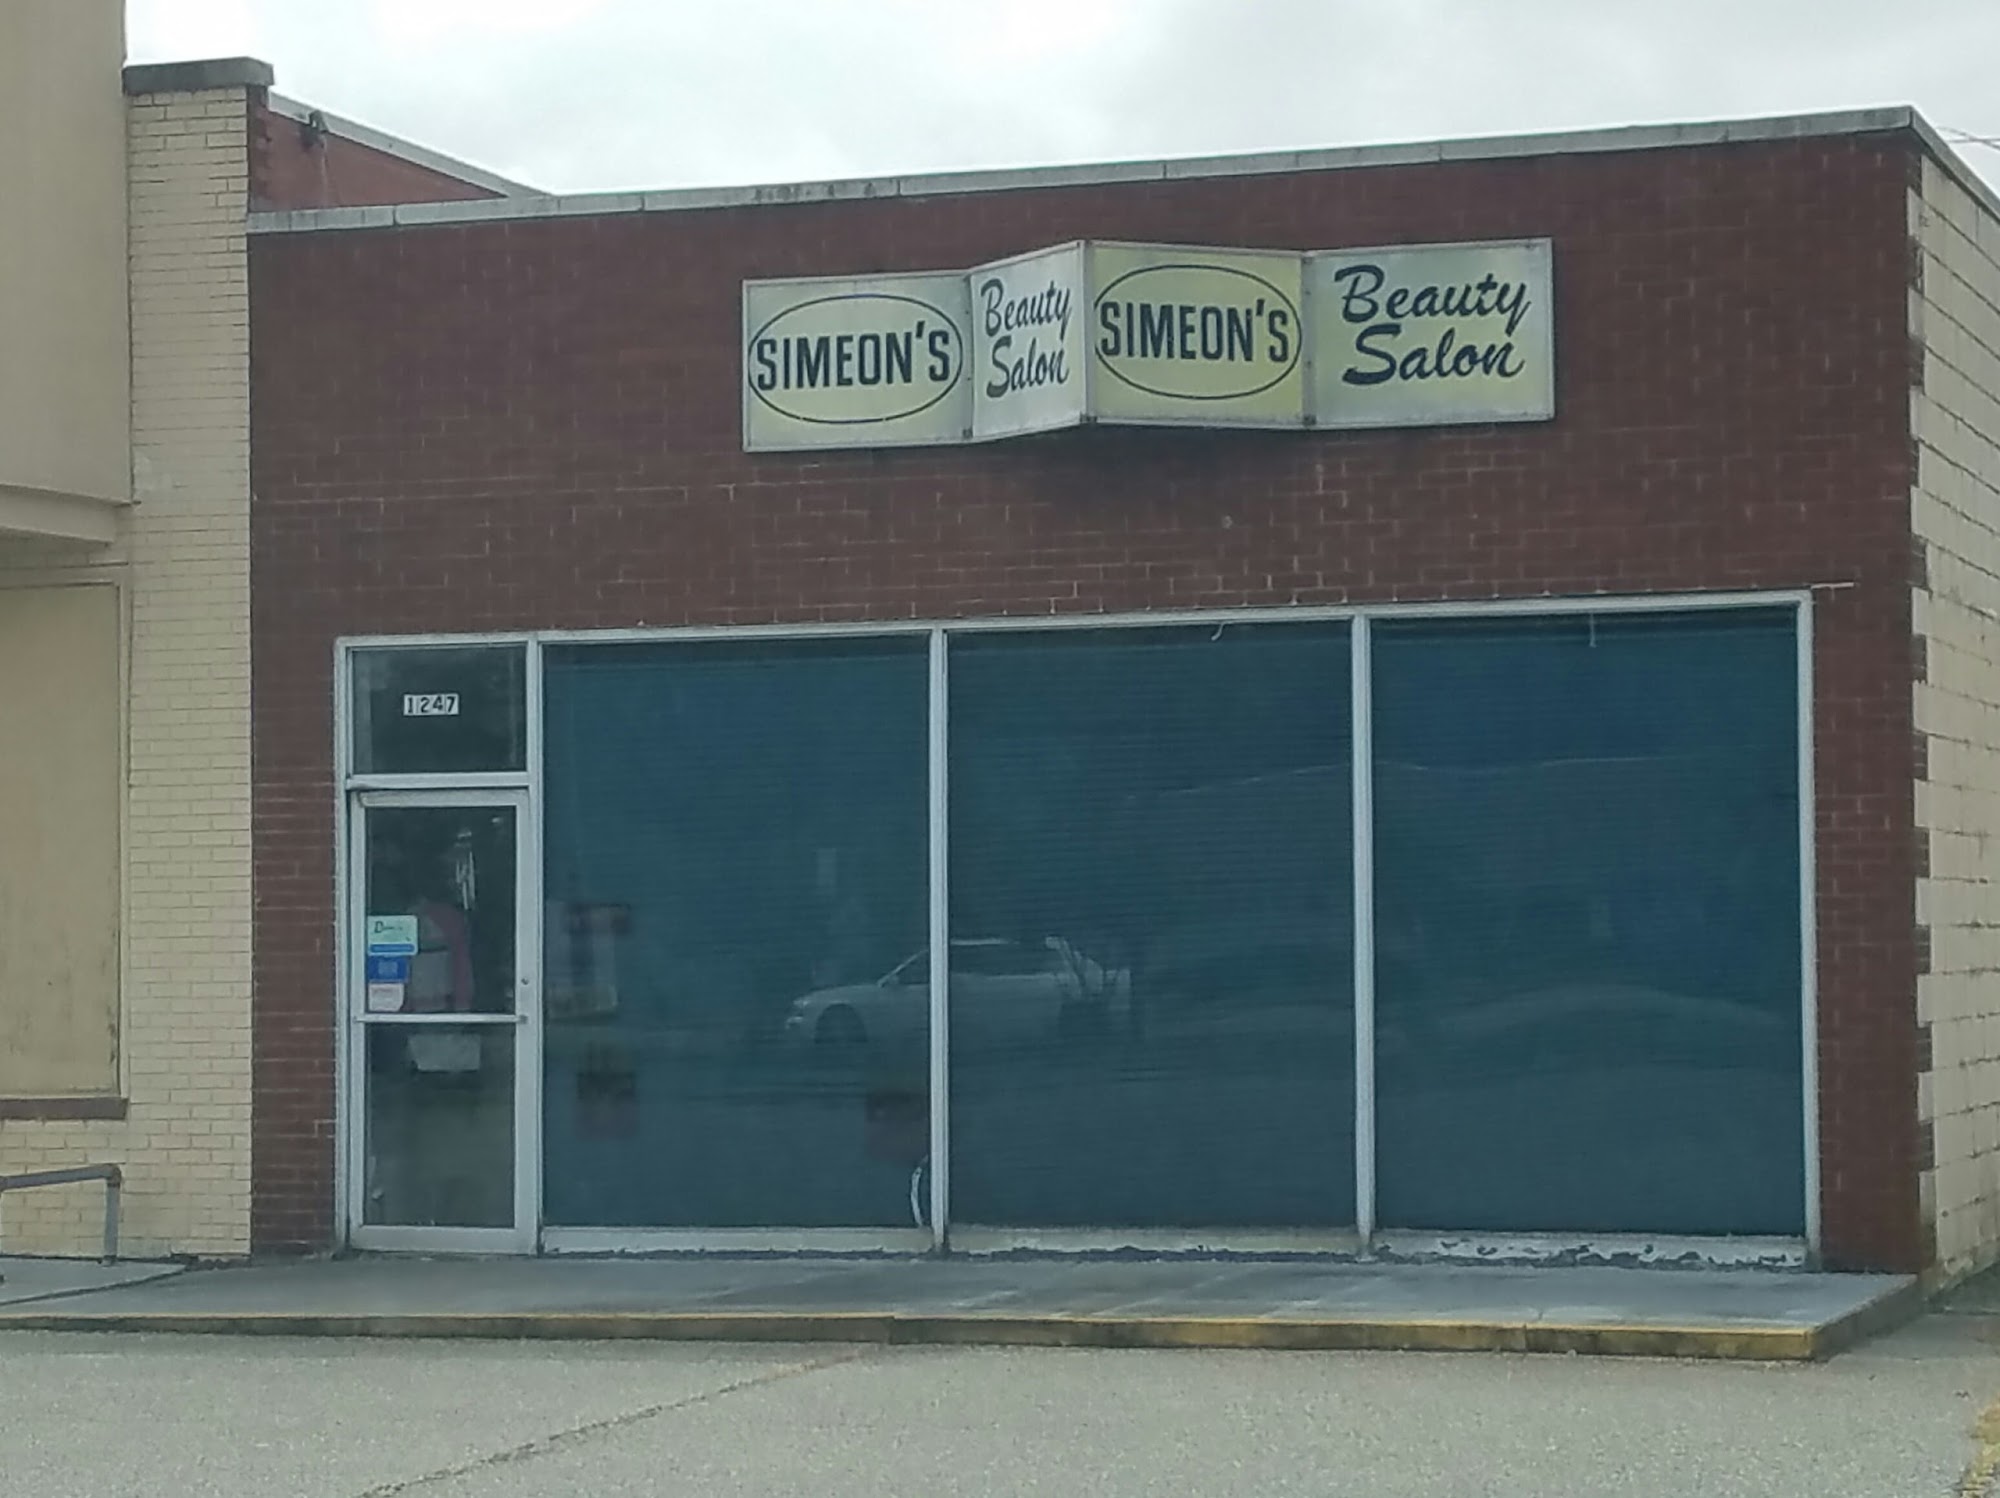 Simeon's Beauty Salon